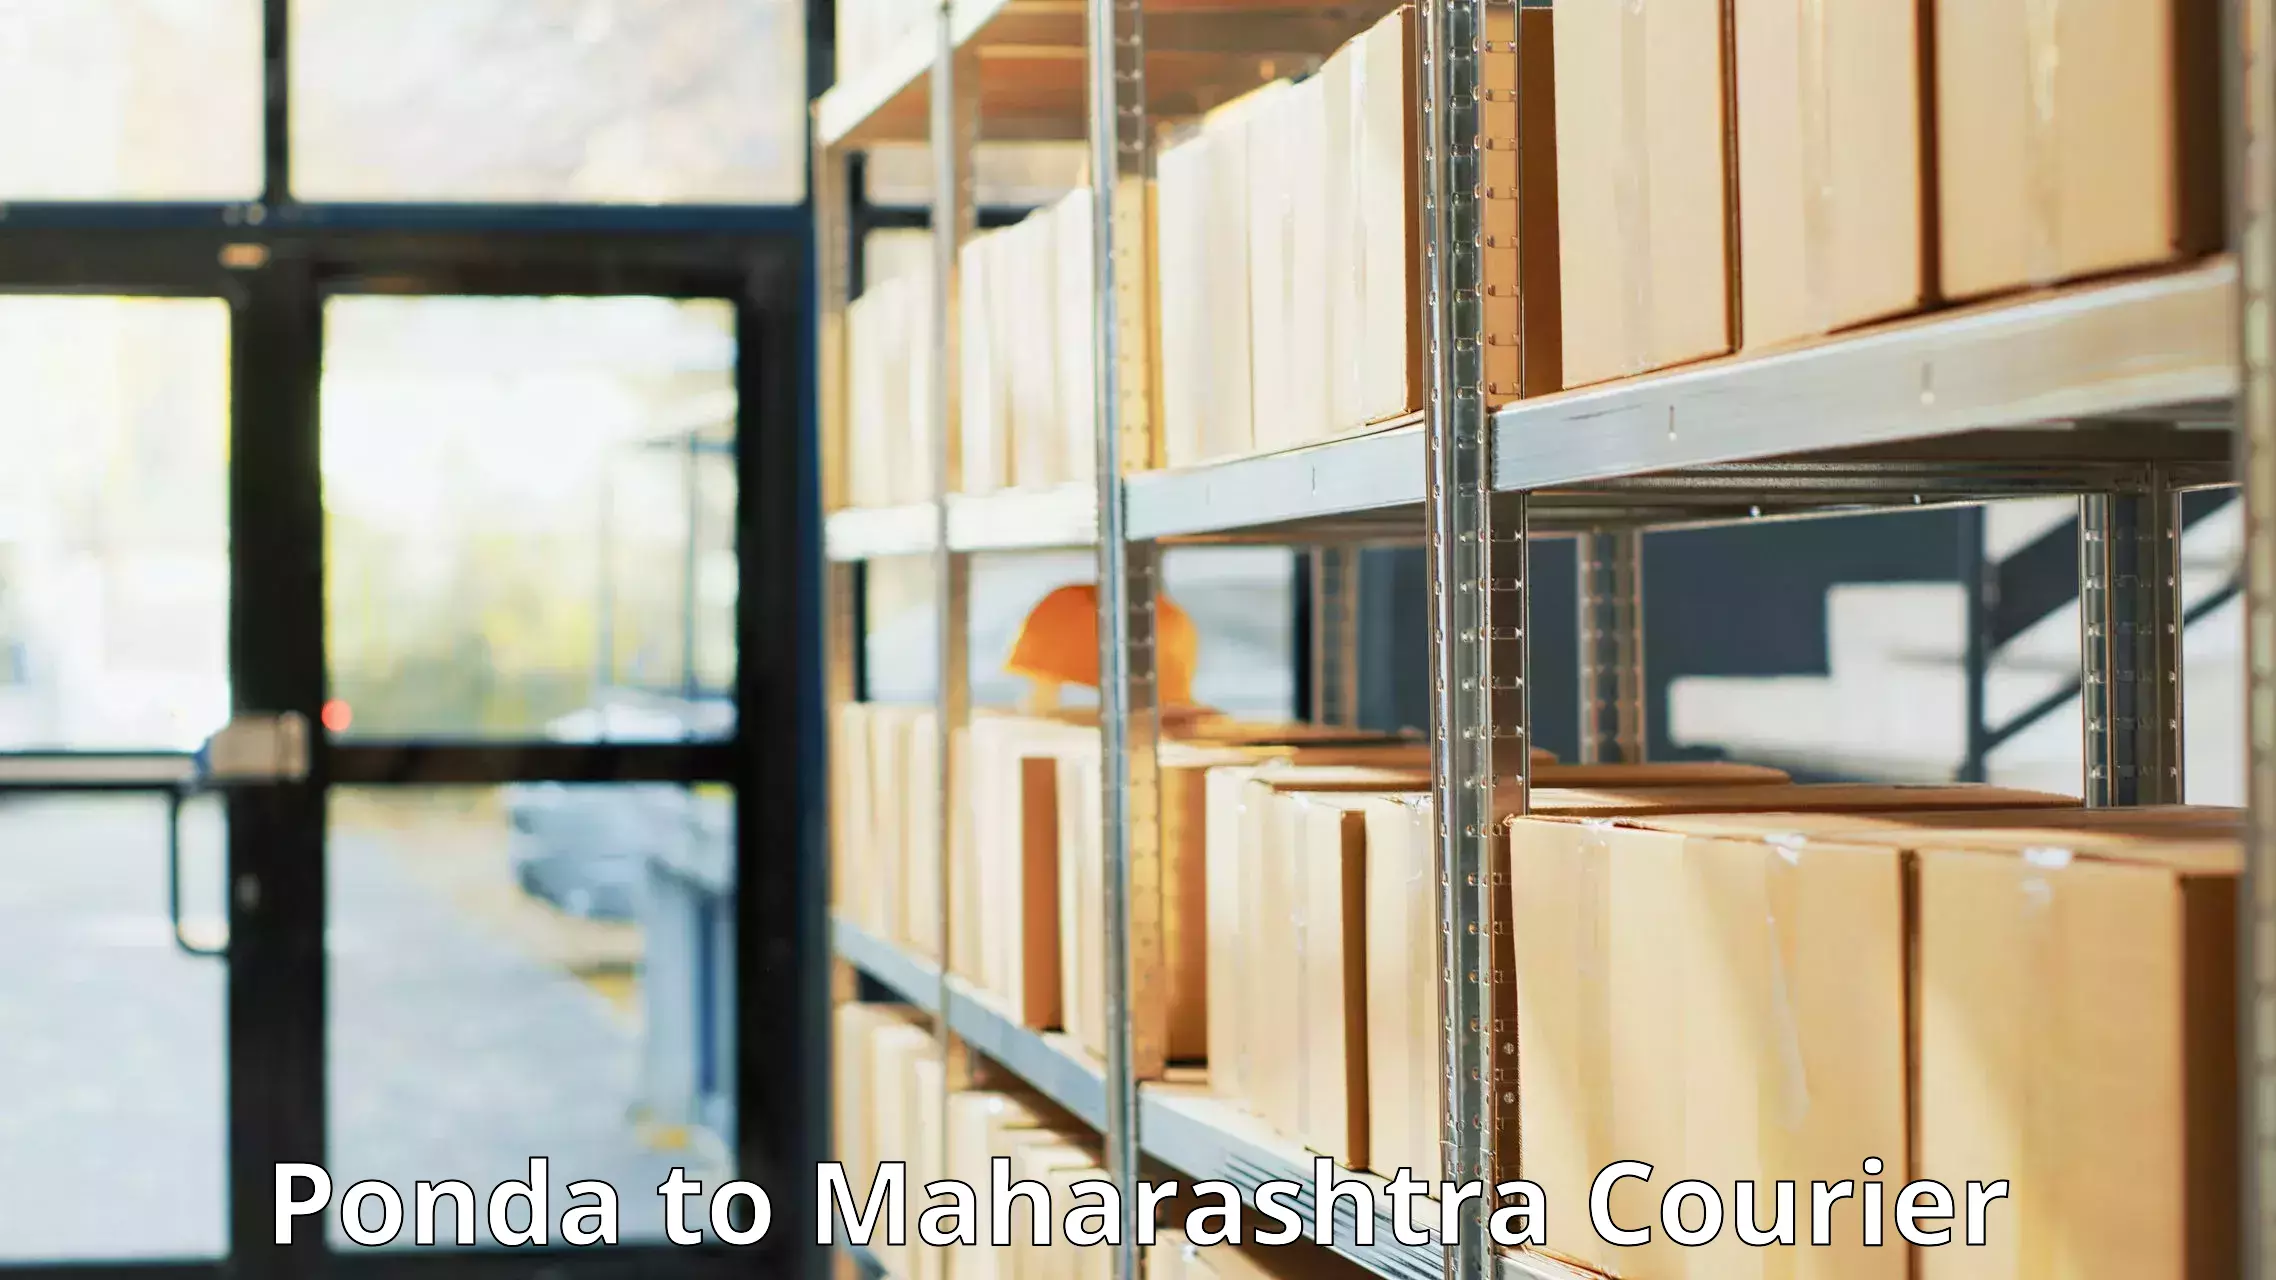 Courier service innovation Ponda to Maharashtra